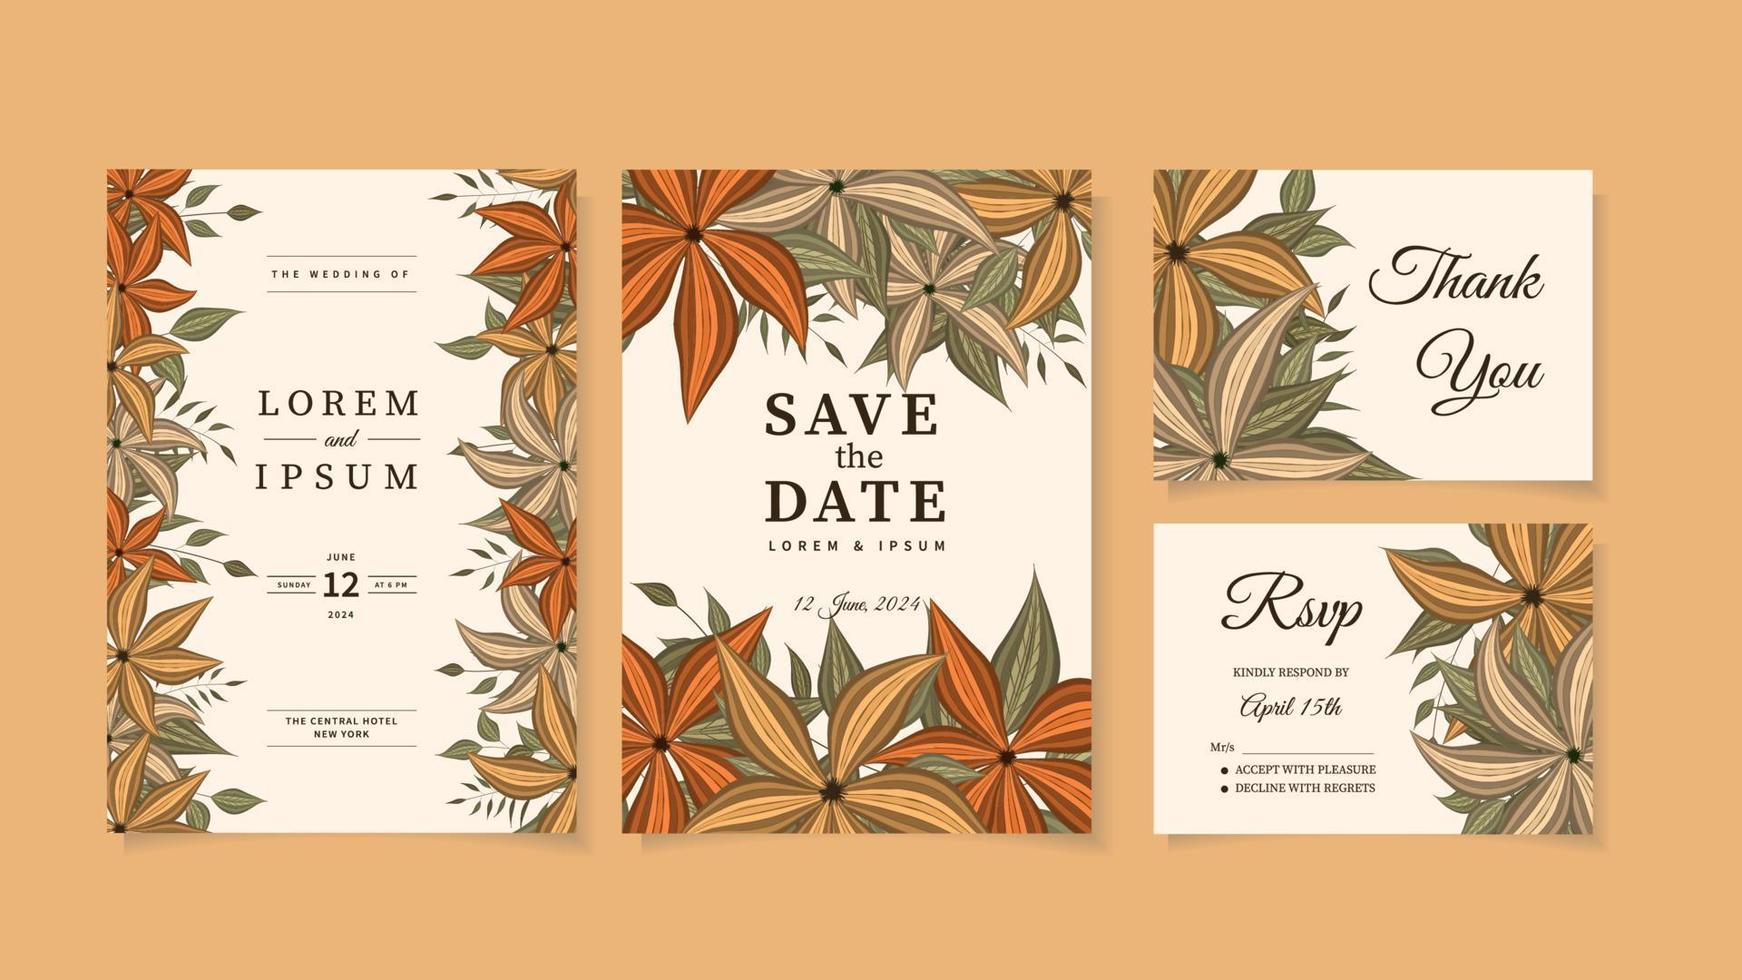 Botanische Hochzeit Hochzeit Einladung Kartenvorlage Wildblumen Laub vektor